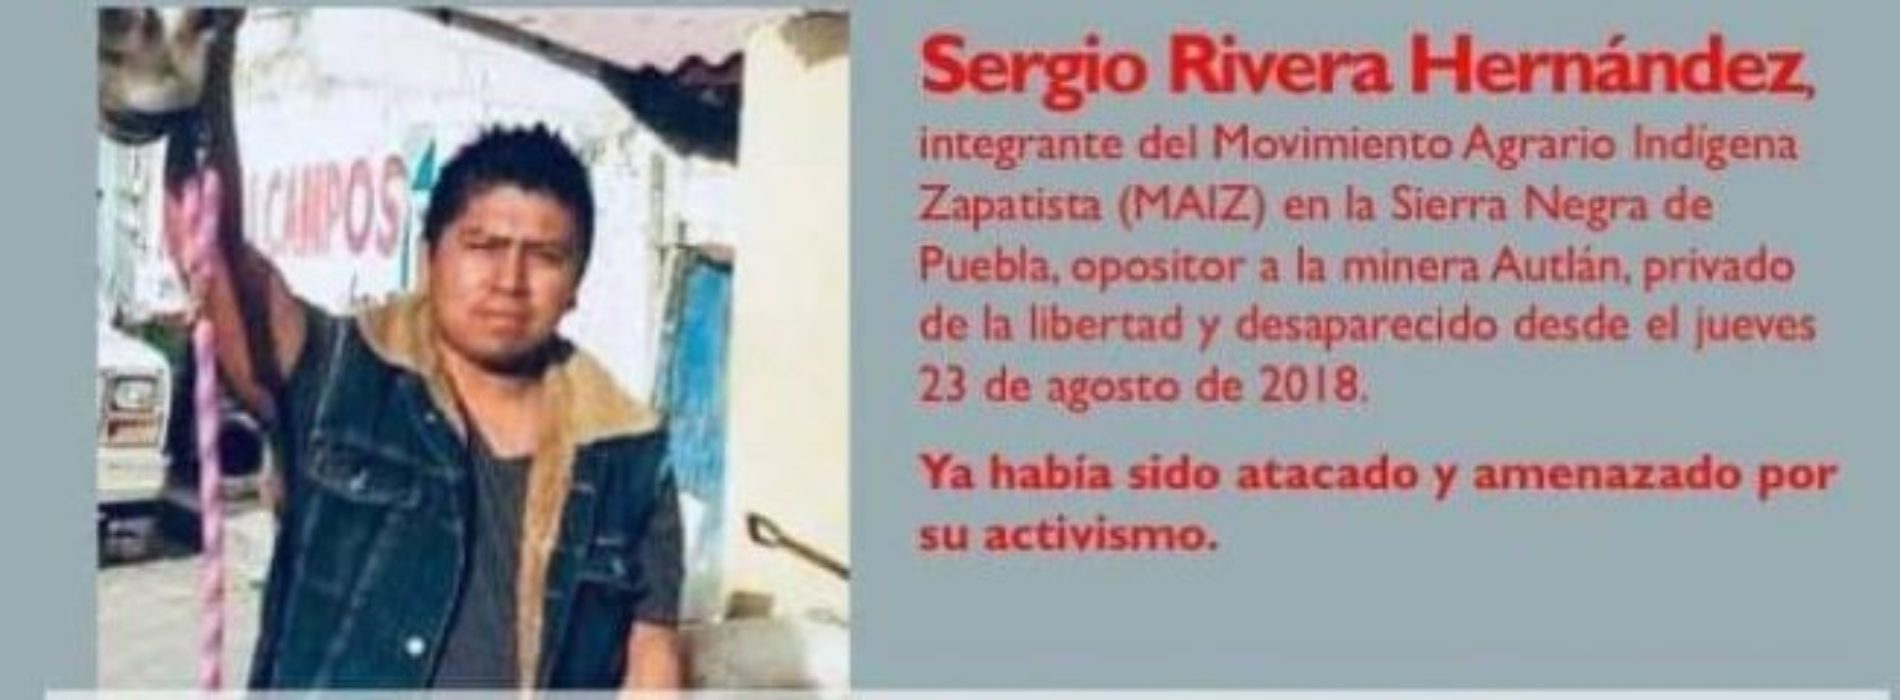 Organismos civiles de Oaxaca exigen investigar desaparición
de activista en Puebla